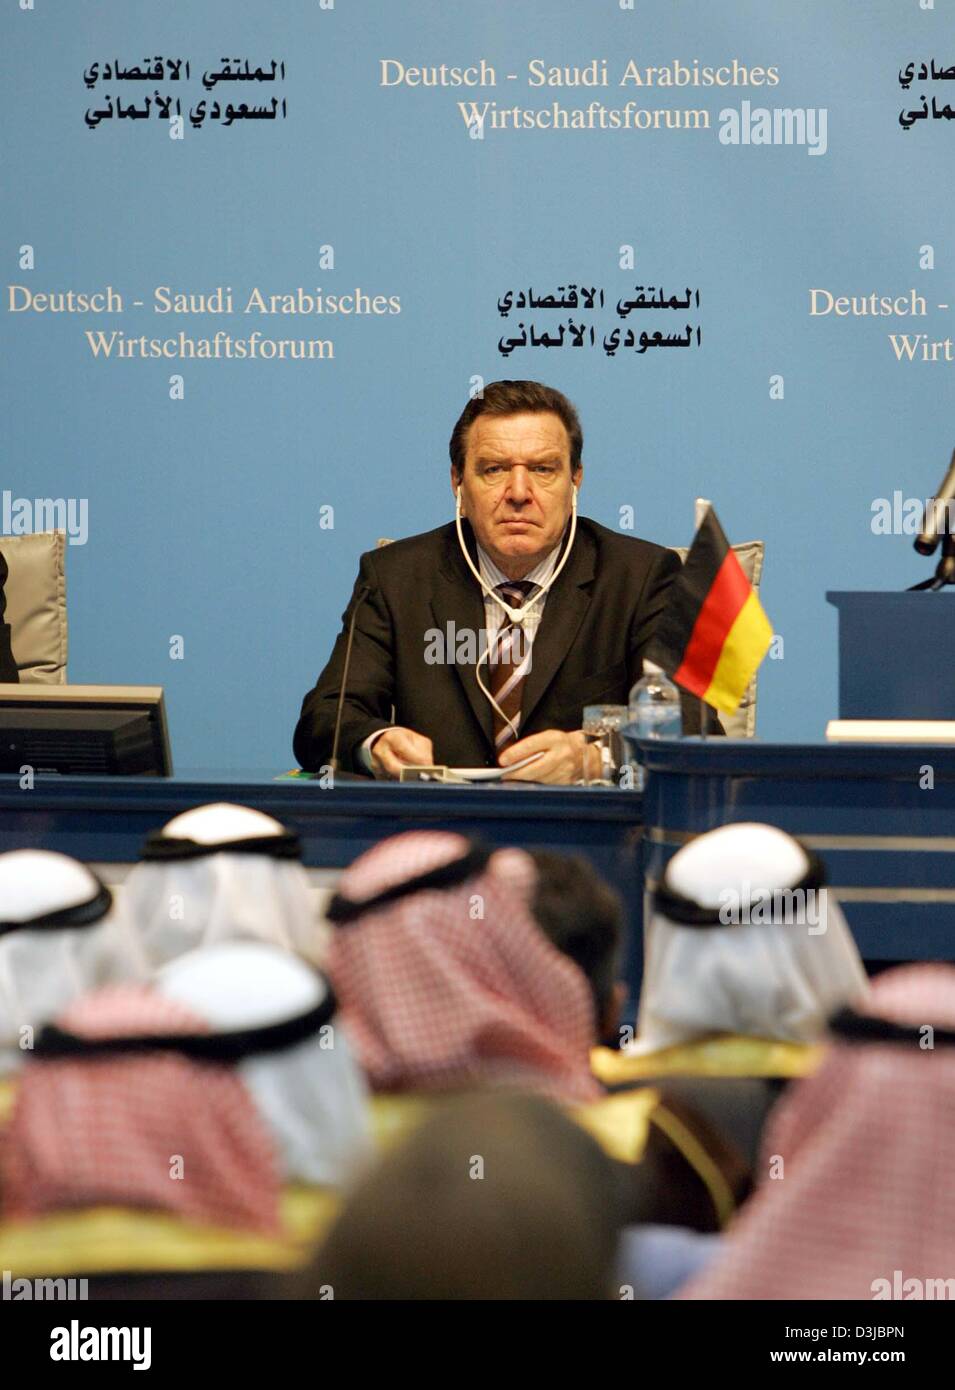 (Dpa) - Bundeskanzler Gerhard Schroeder besucht eine wirtschaftliche Forum durch die Kammer Handwerk in Riyadh, Saudi Arabien, 28. Februar 2005. Schröder kam in der saudischen Hauptstadt am 27. Februar am Anfang einer einwöchigen Tour von sieben arabischen Ländern zur Steigerung Deutschlands Handel und politischen Beziehungen in der Golfregion. Stockfoto